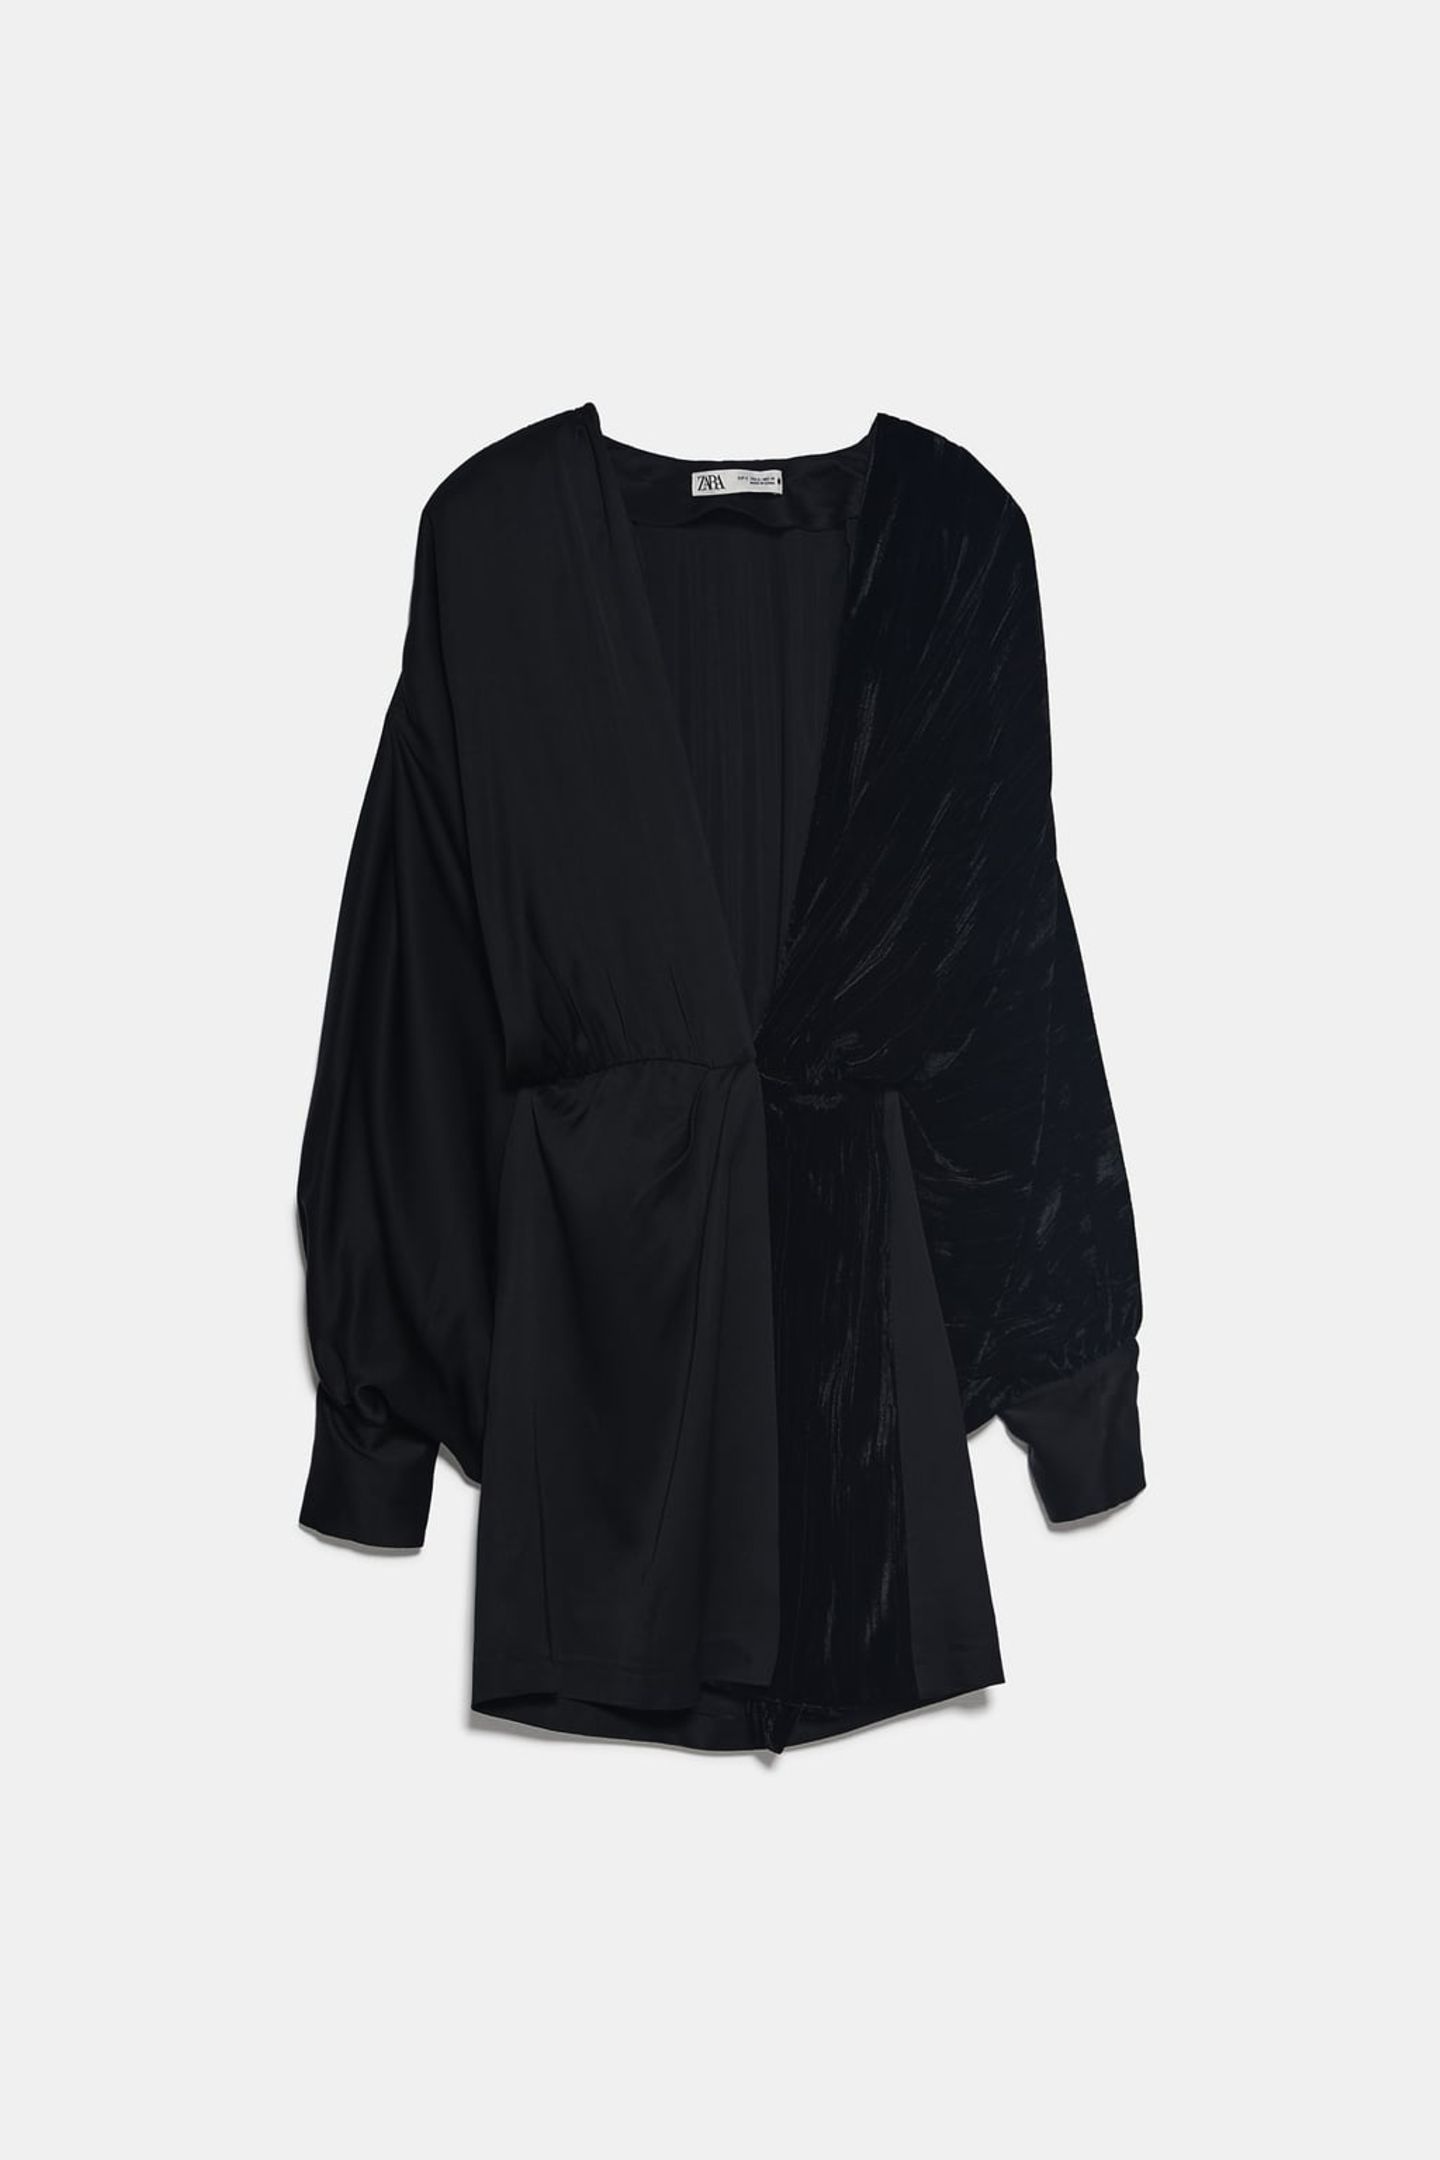 Perfekt für die Festtage – dieses Wickelkleid mit edlen Samtdetails. Von Zara, um 50 Euro.